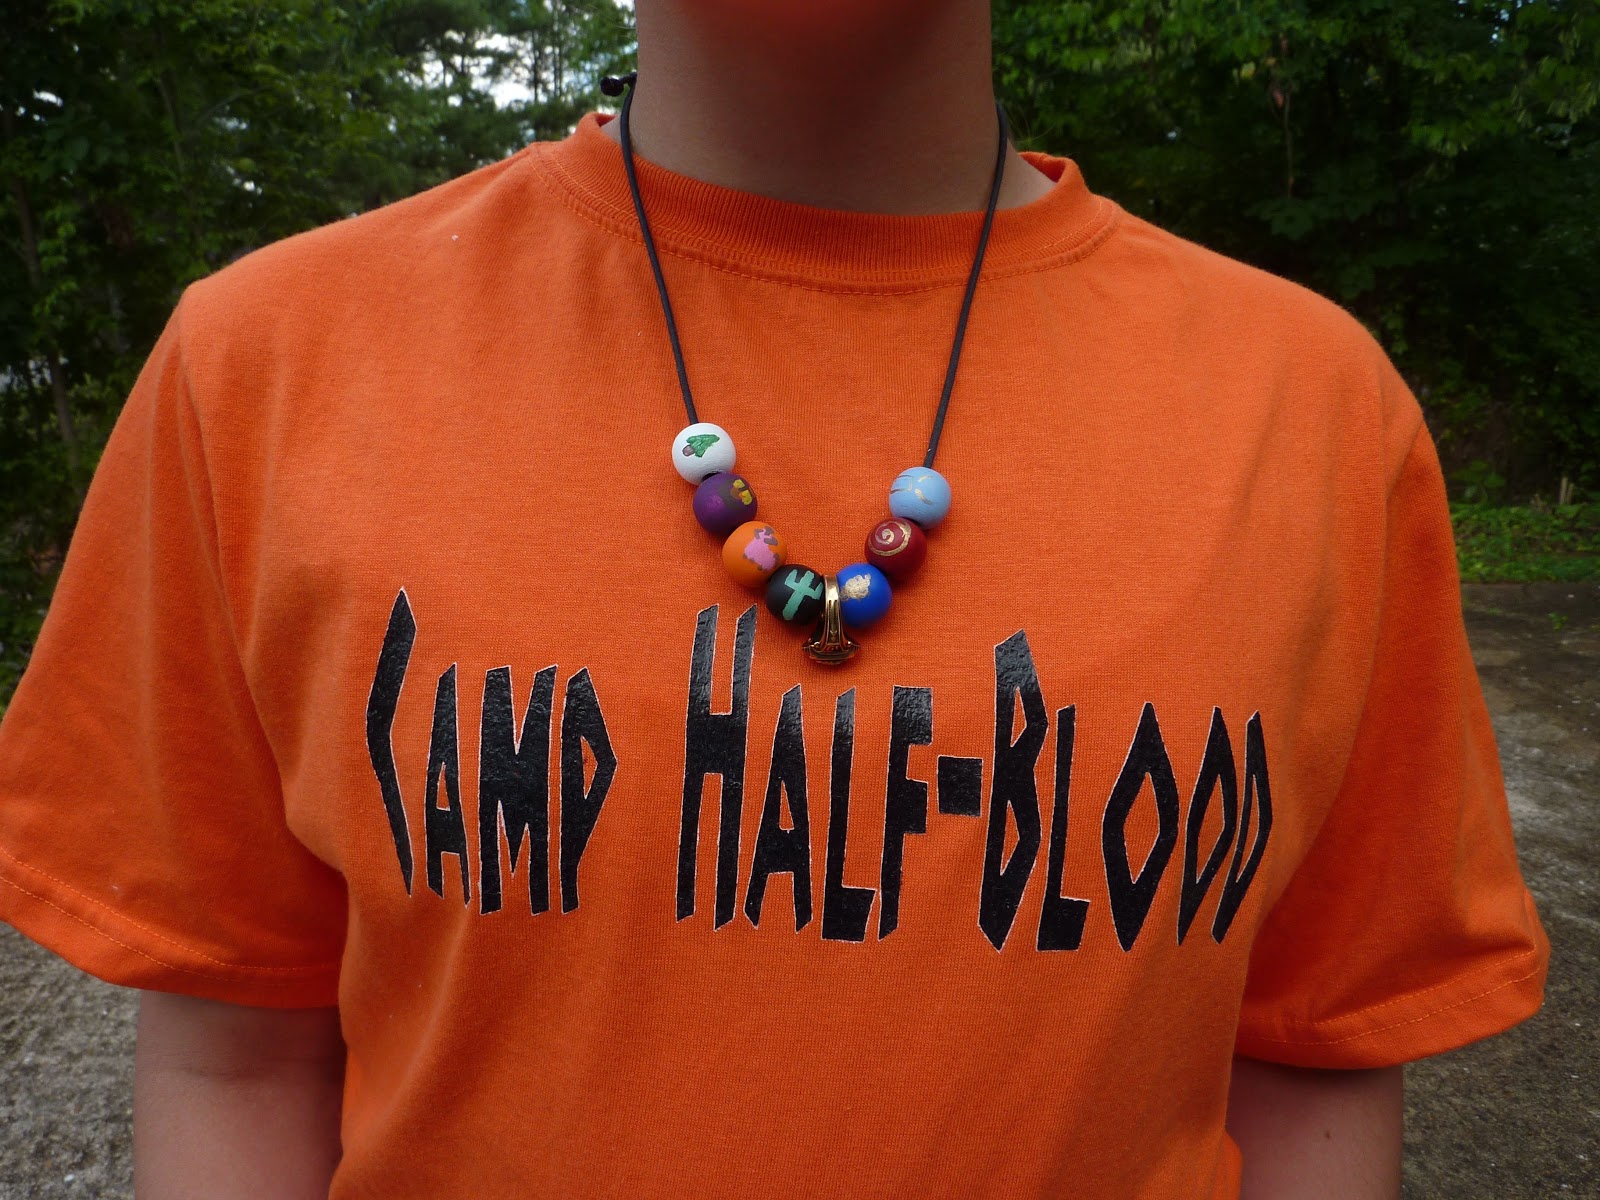 Camp Half-Blood Necklace - Kyano Theseus Paxton - Wattpad